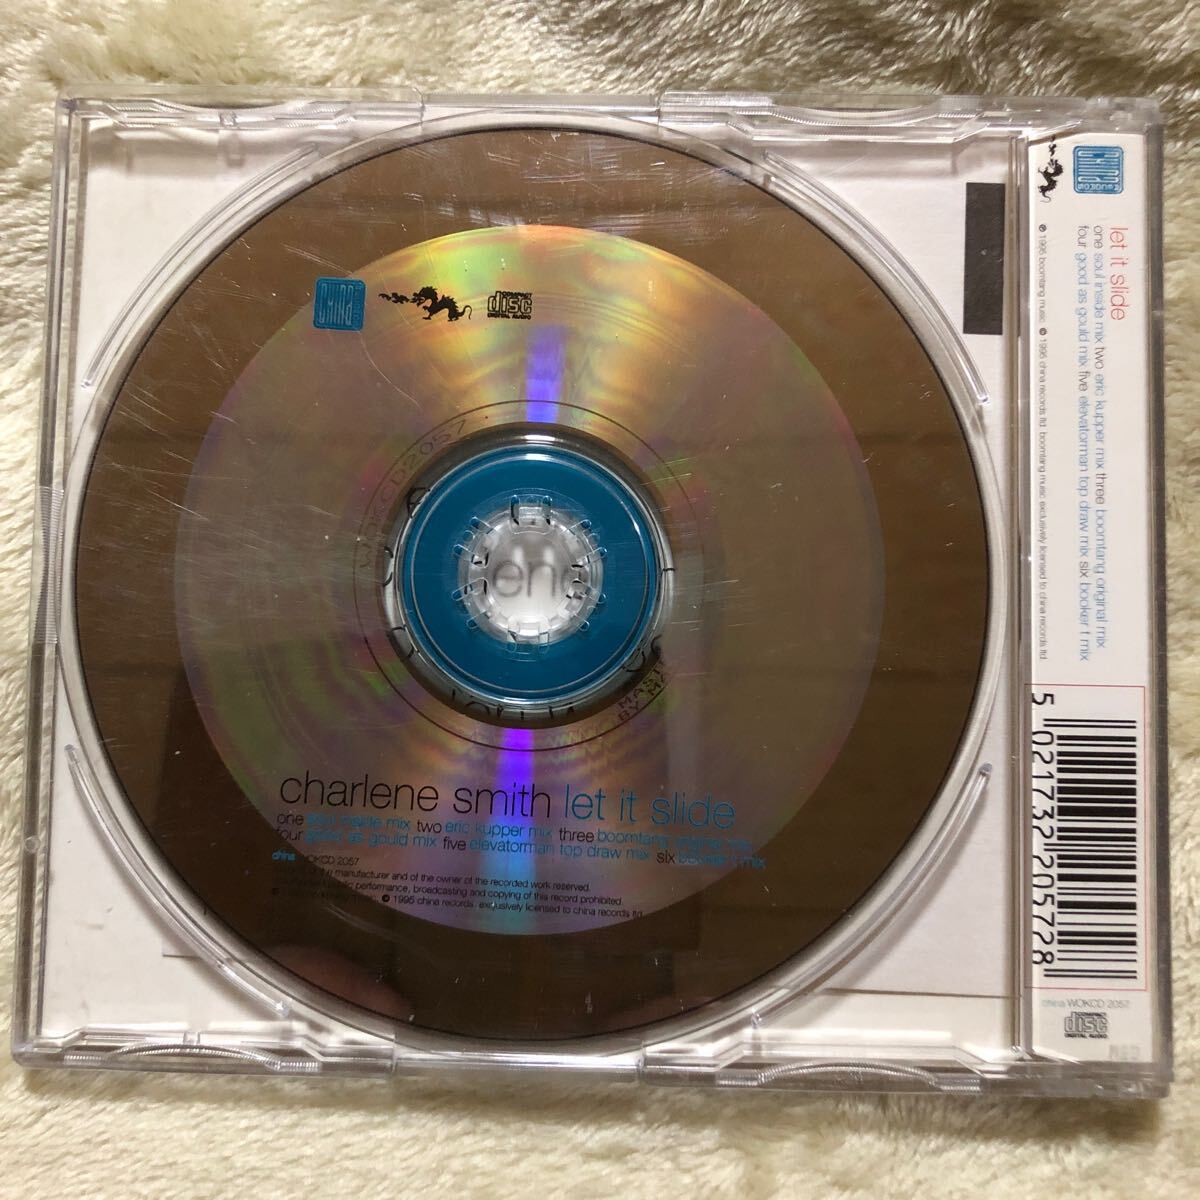 Charlene Smith シャーリーン・スミス/Let It Slide 英盤CDシングル リミックス6曲収録 90年代クラブクラシック！廃盤貴重の画像2